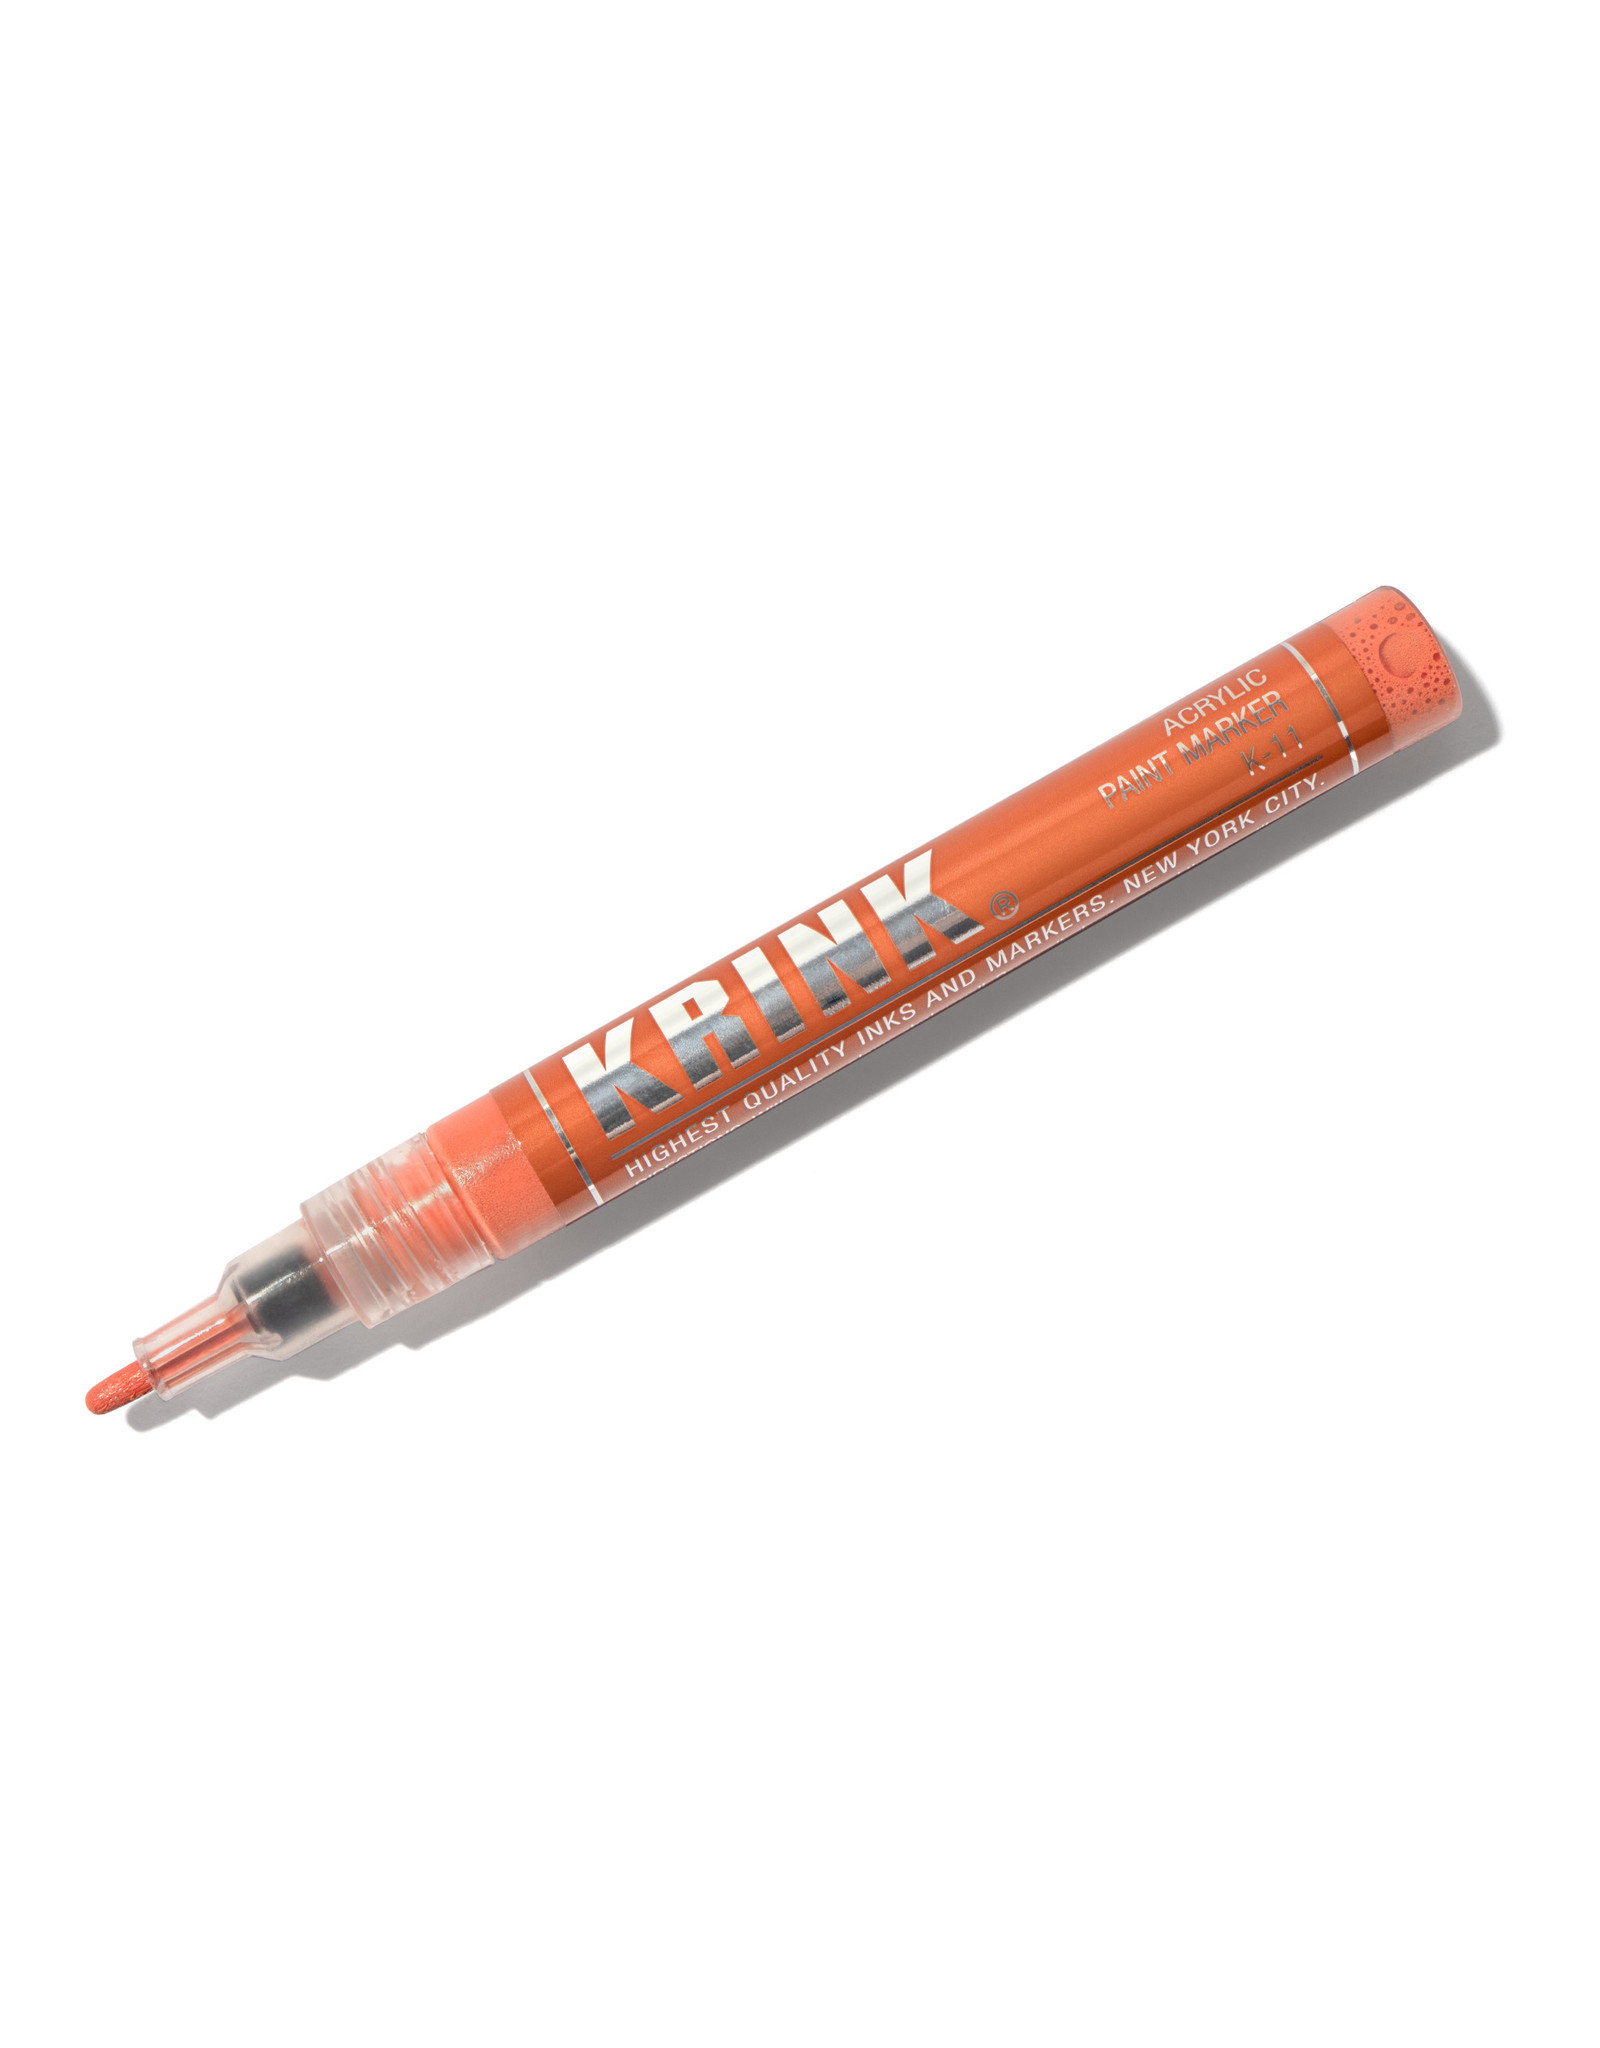 Krink Krink K-11 Acrylic Paint Marker, Orange